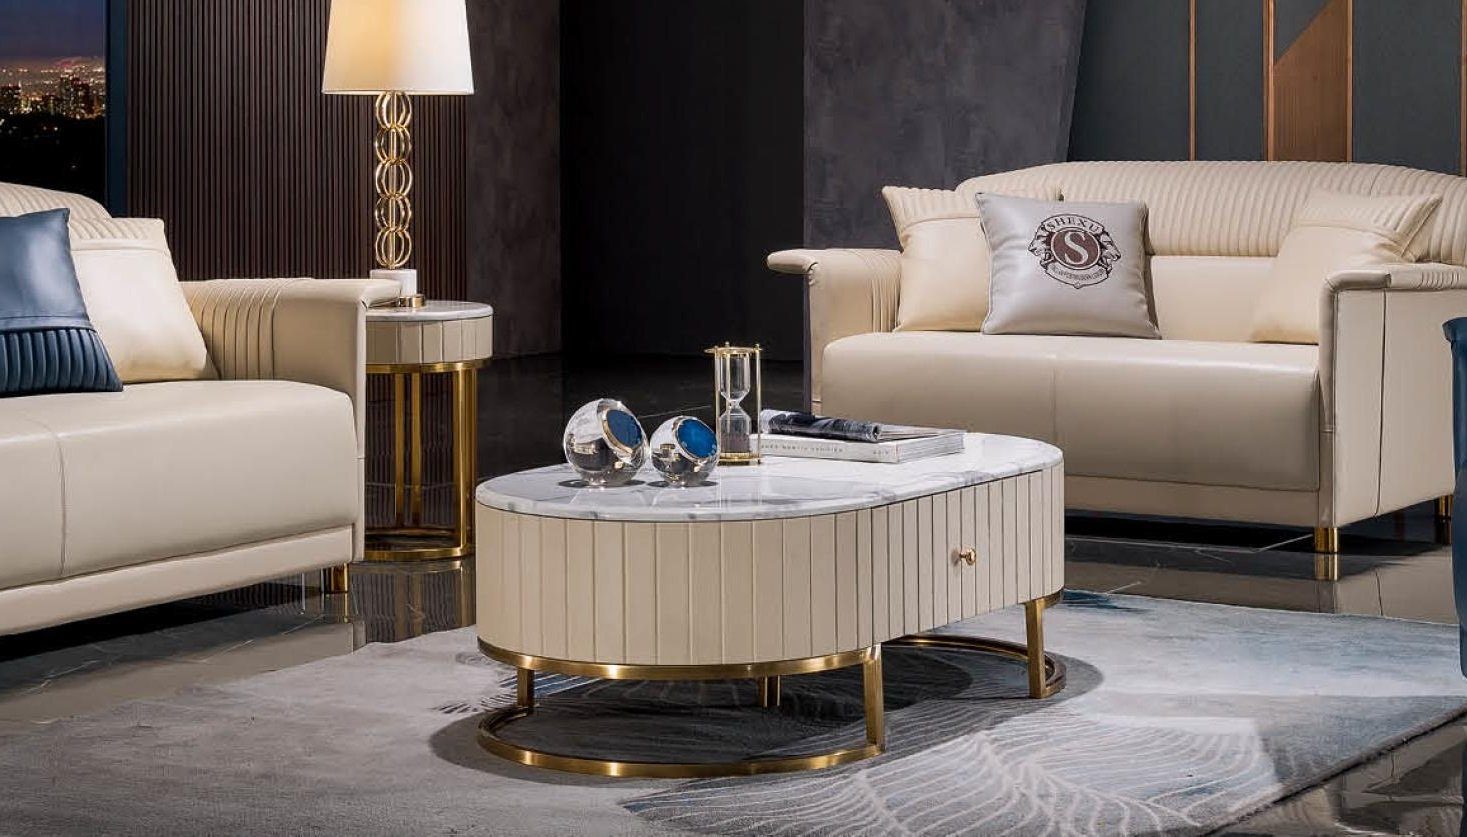 JVmoebel Couchtisch Couchtisch Oval Luxus Design Tische Beistelltische Wohnzimmer, Made In Europe